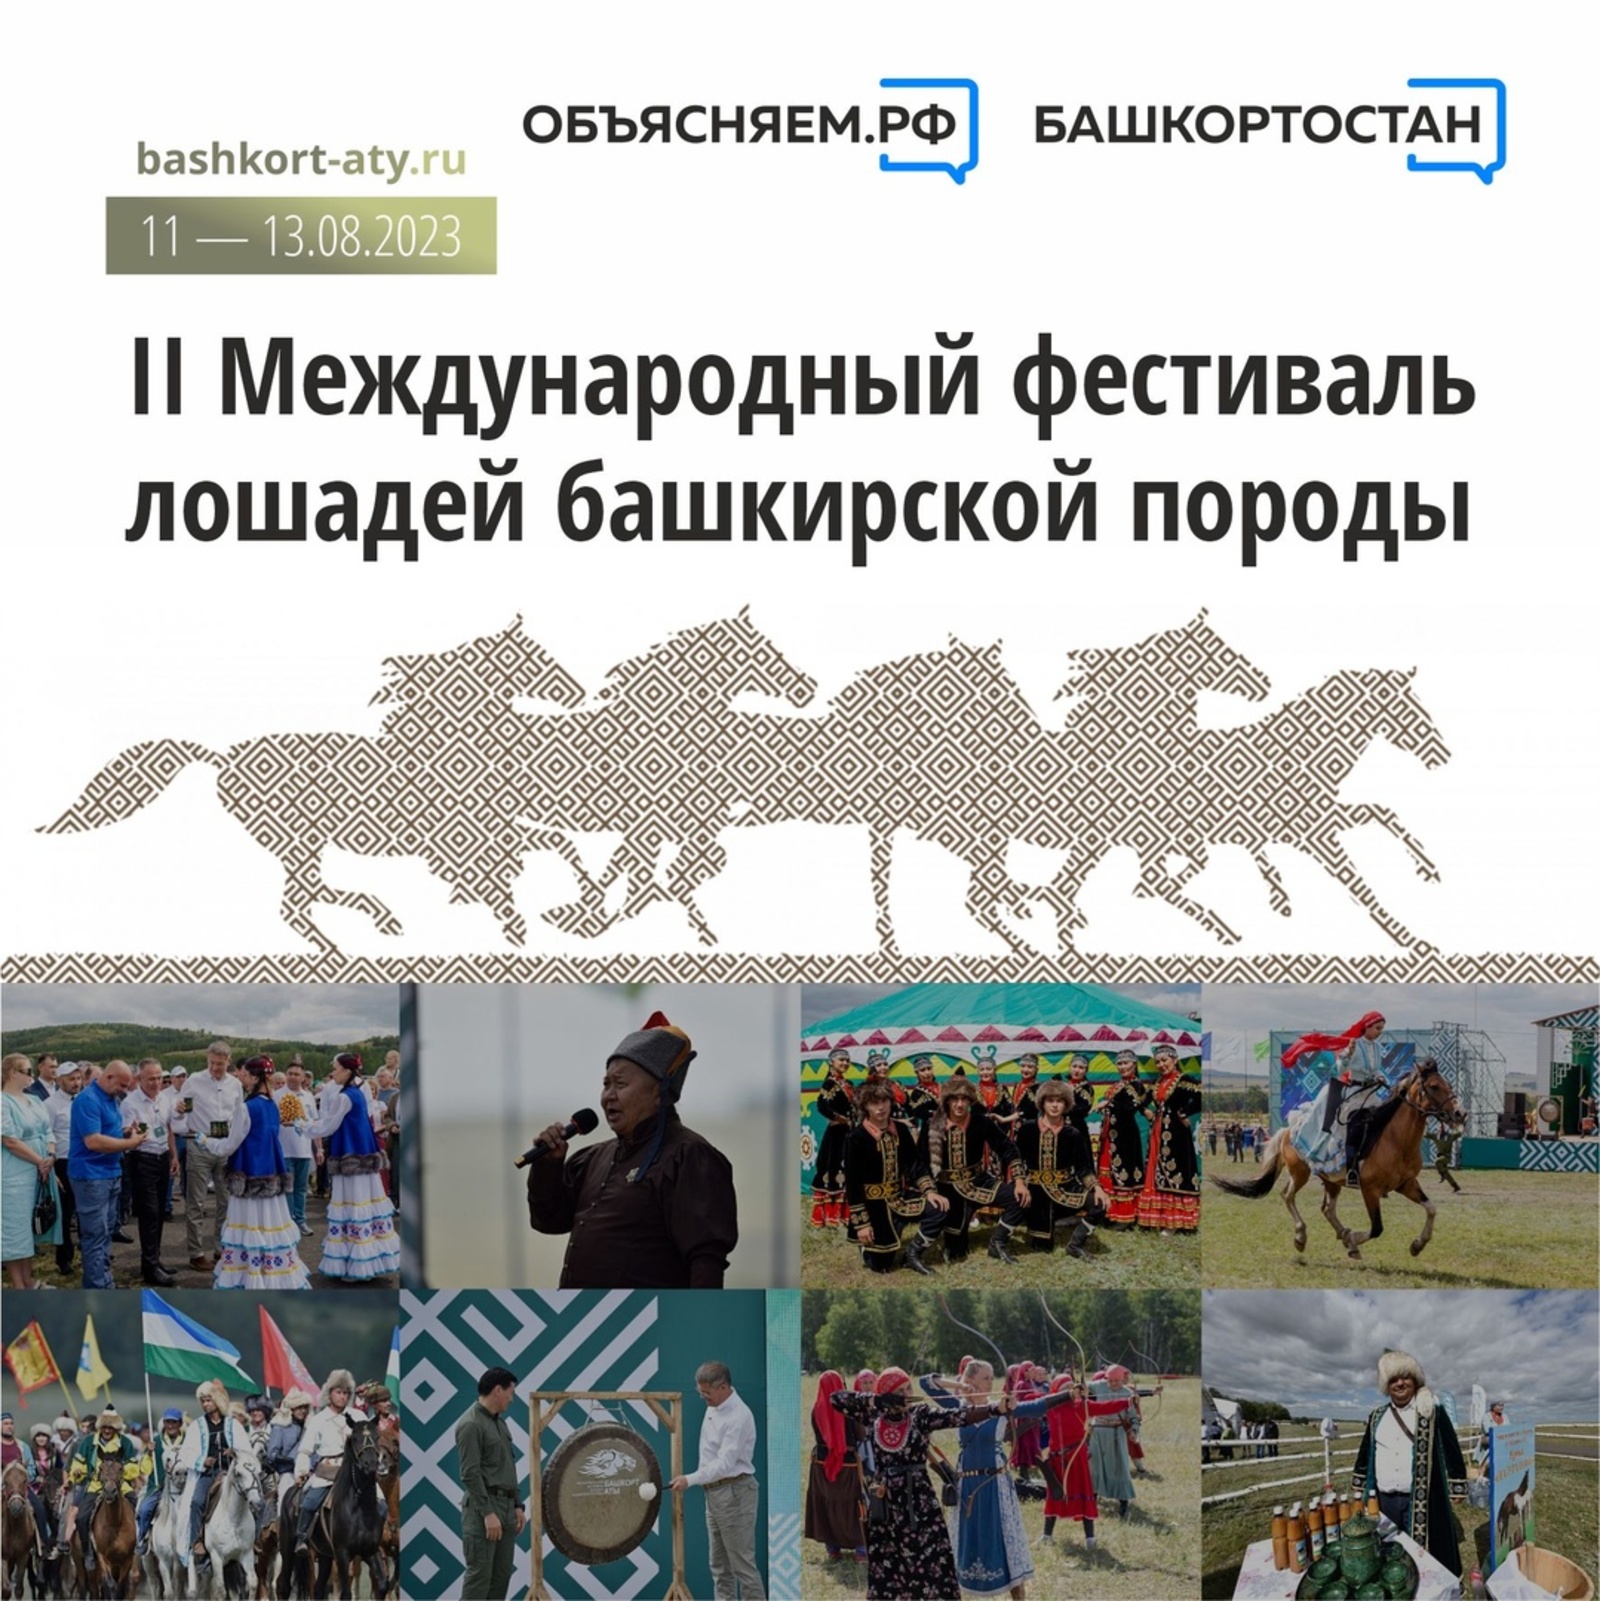 в Башкортостане состоится международный фестиваль лошадей башкирской породы "Башҡорт аты"